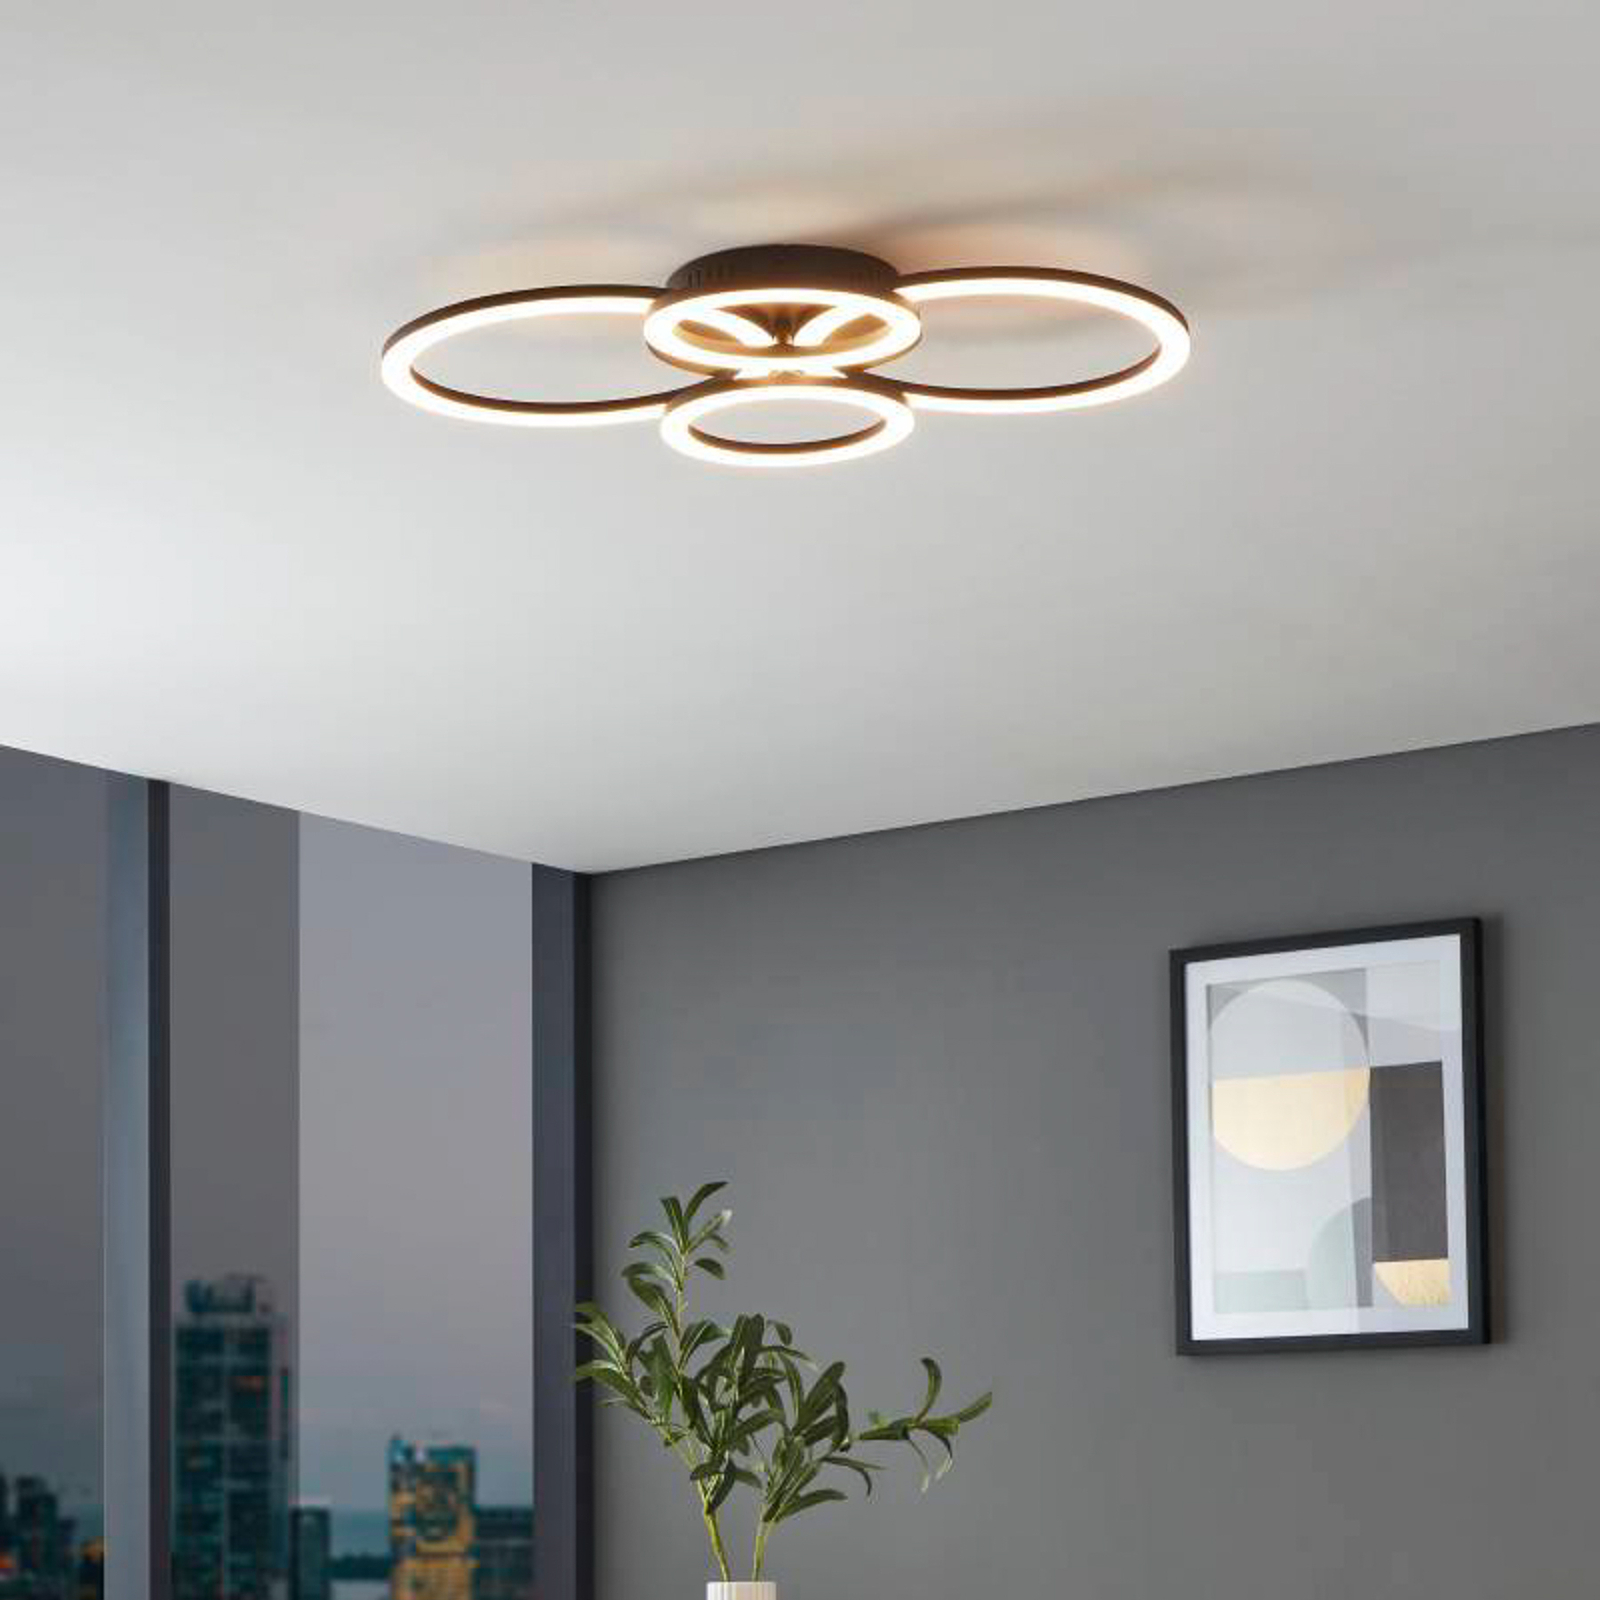 EGLO connect Parrapos-Z LED ceiling lamp, 4-bulb